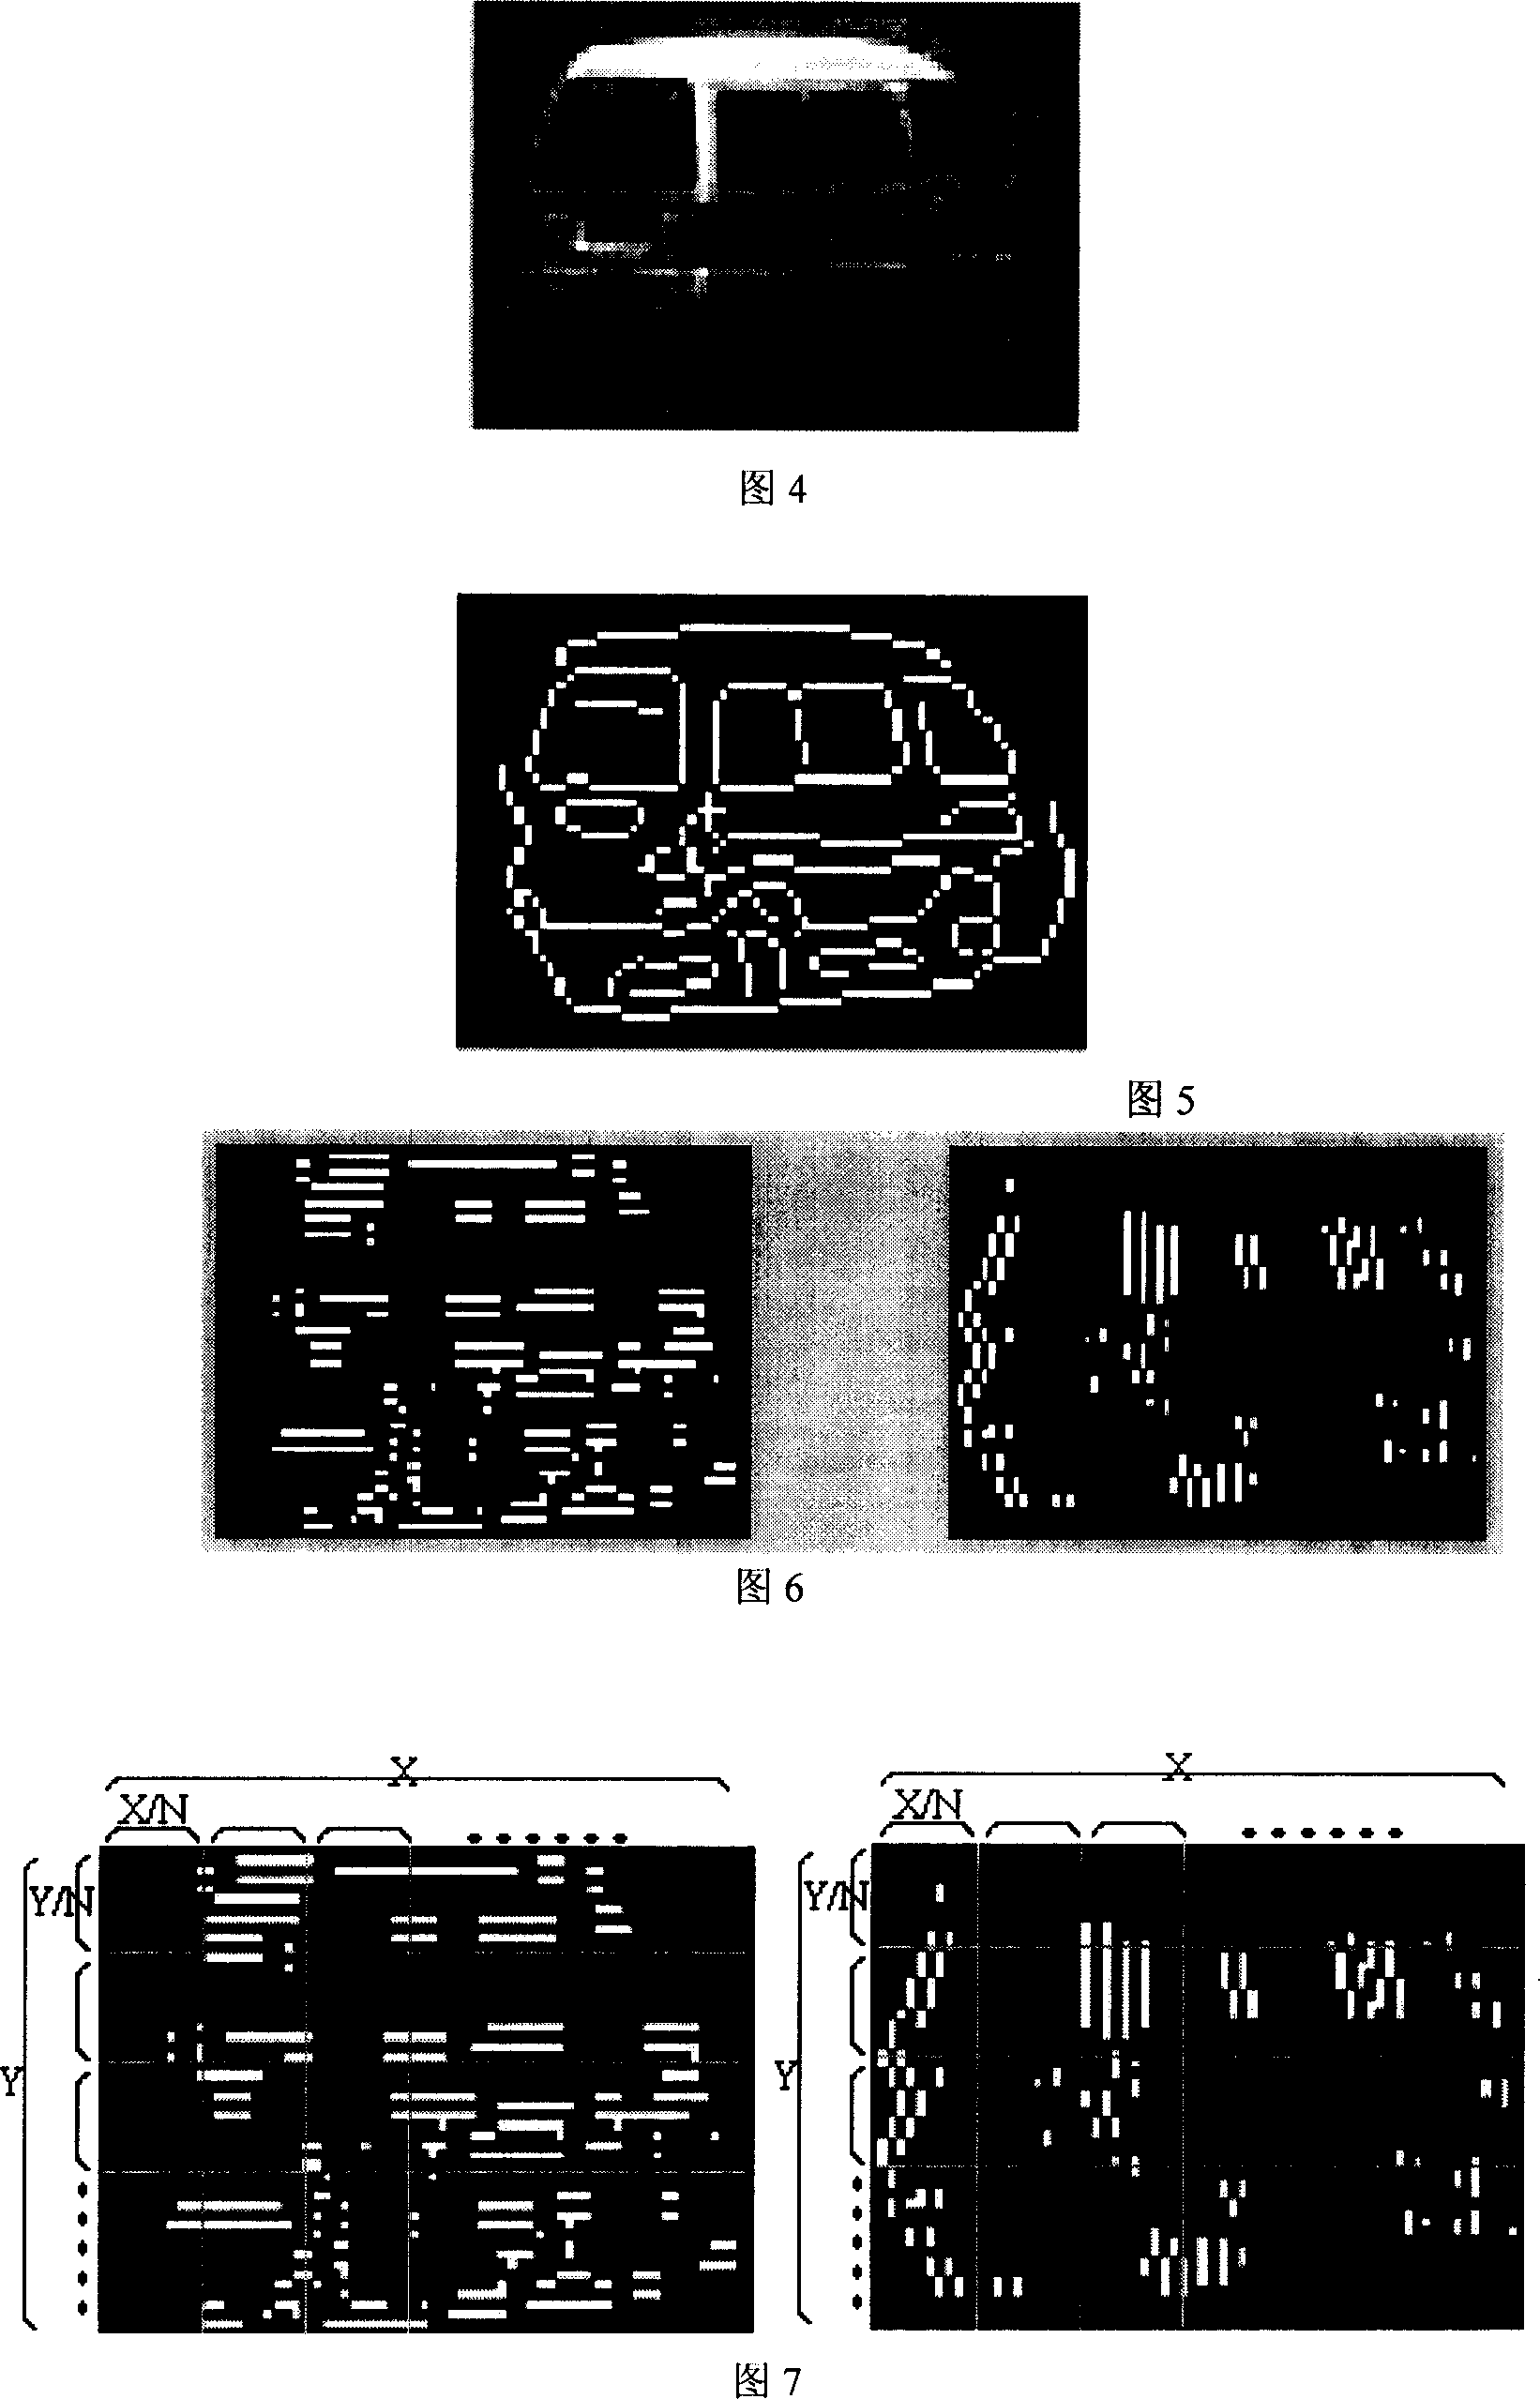 Vehicle recognition algorithm based on contour